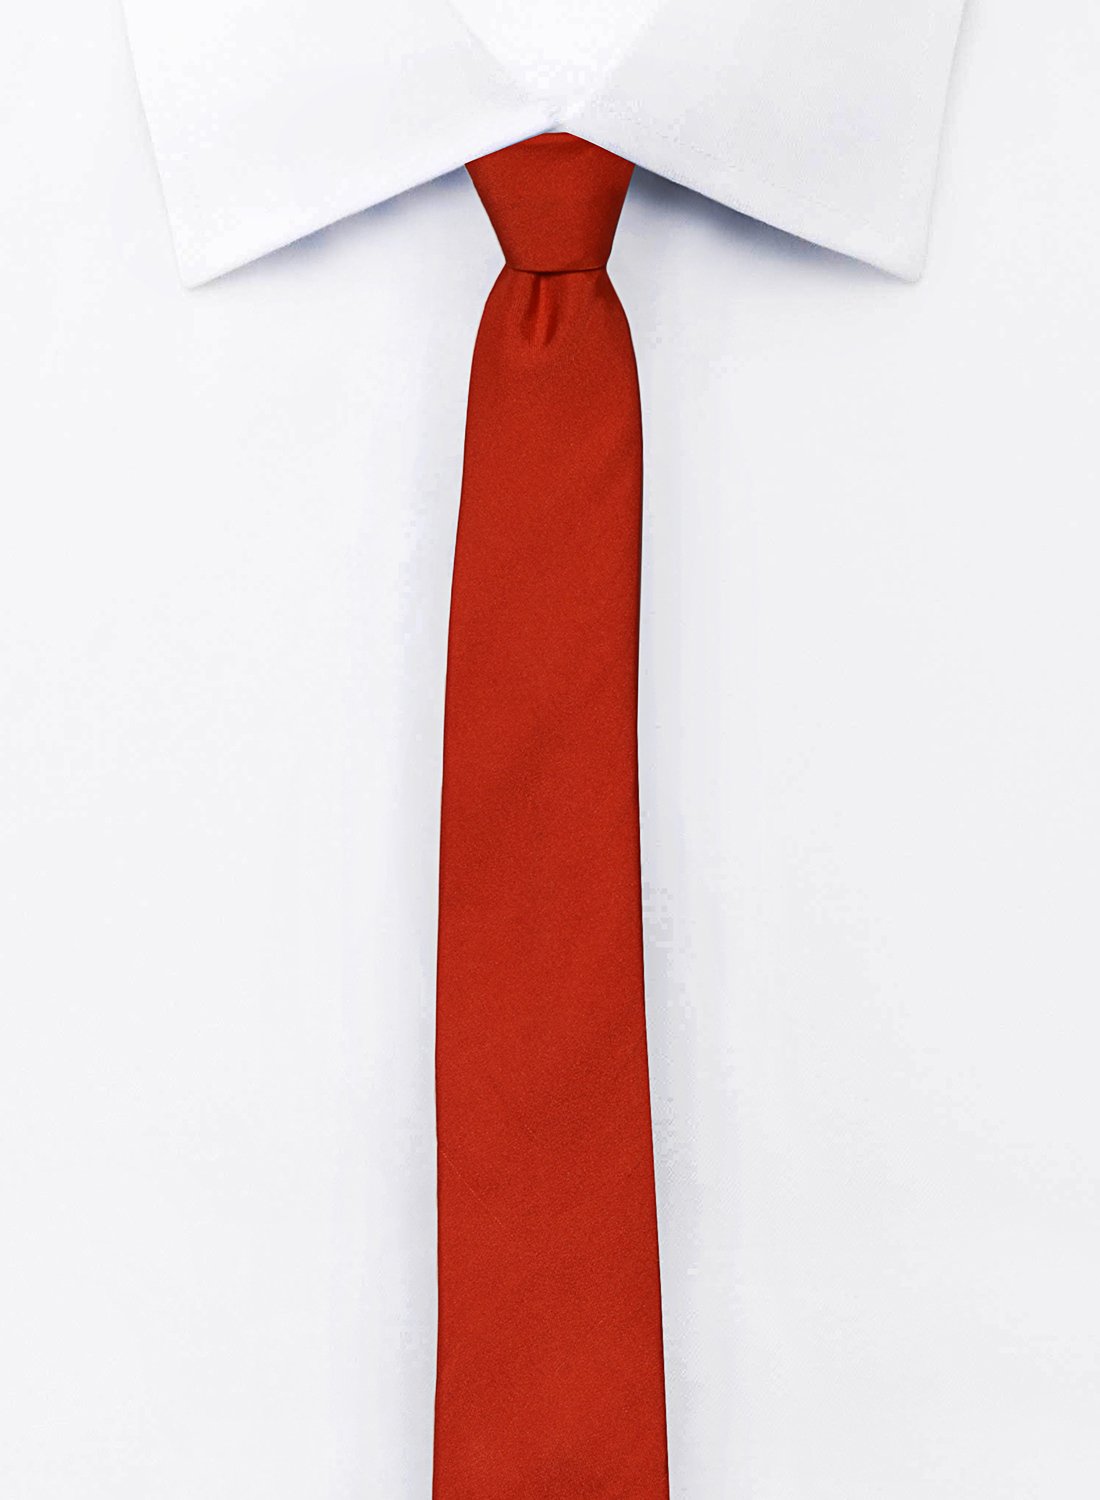 Chokore Special 4-in-1 Marine Gift Set (Pocket Square, Tie, Cravat & Cufflinks)